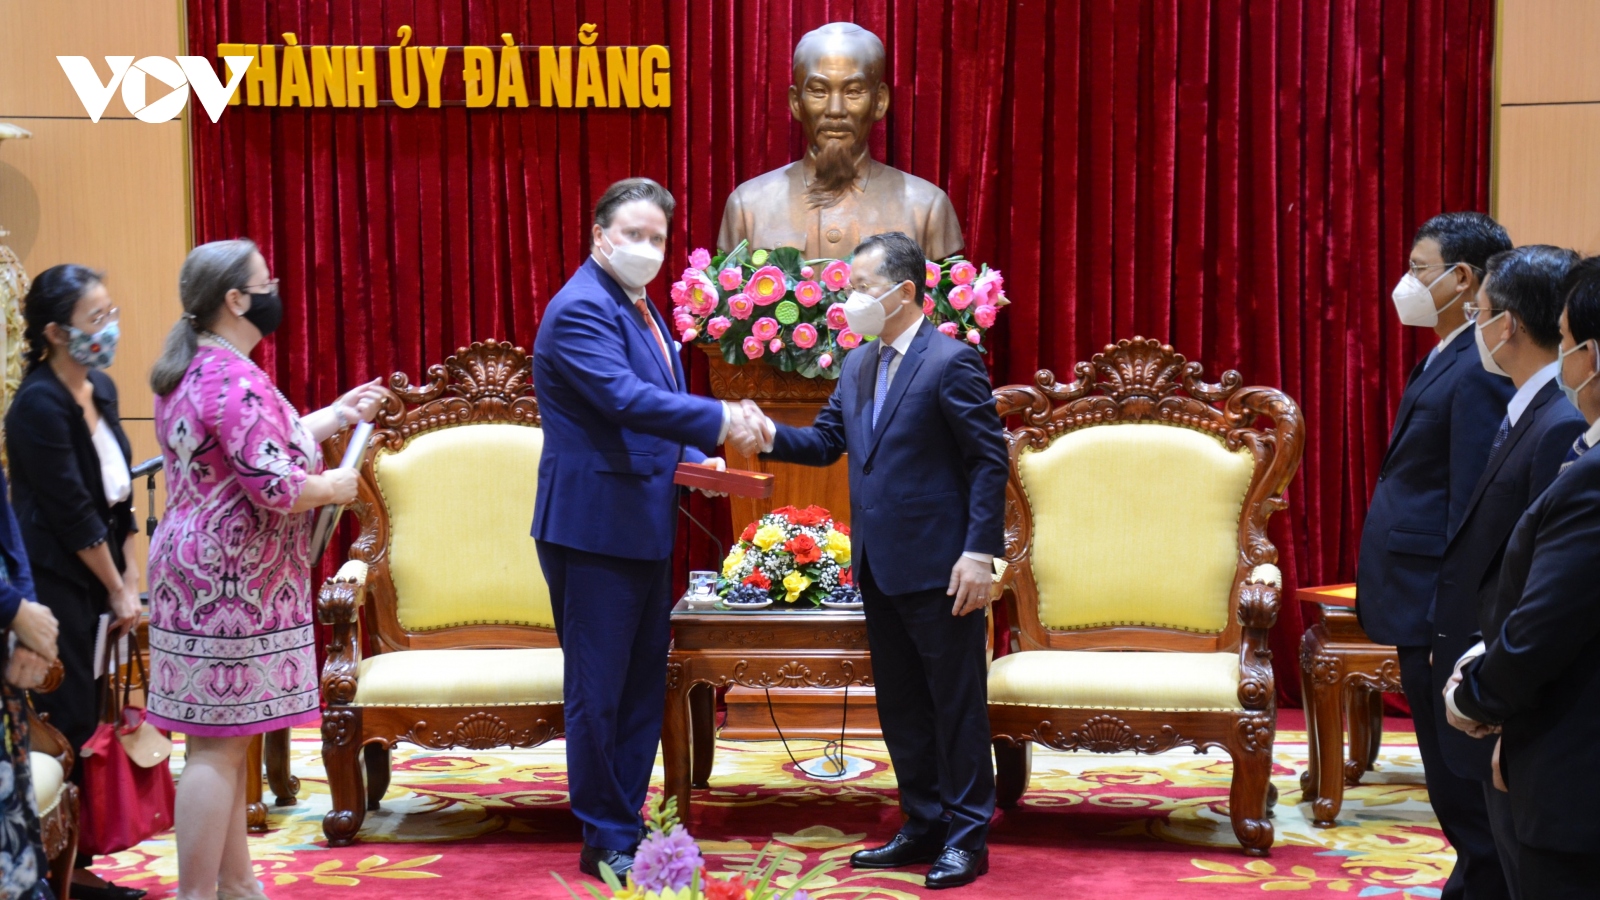 Đại sứ Hoa Kỳ tại Việt Nam: Sẽ thúc đẩy các nhà đầu tư đến Đà Nẵng